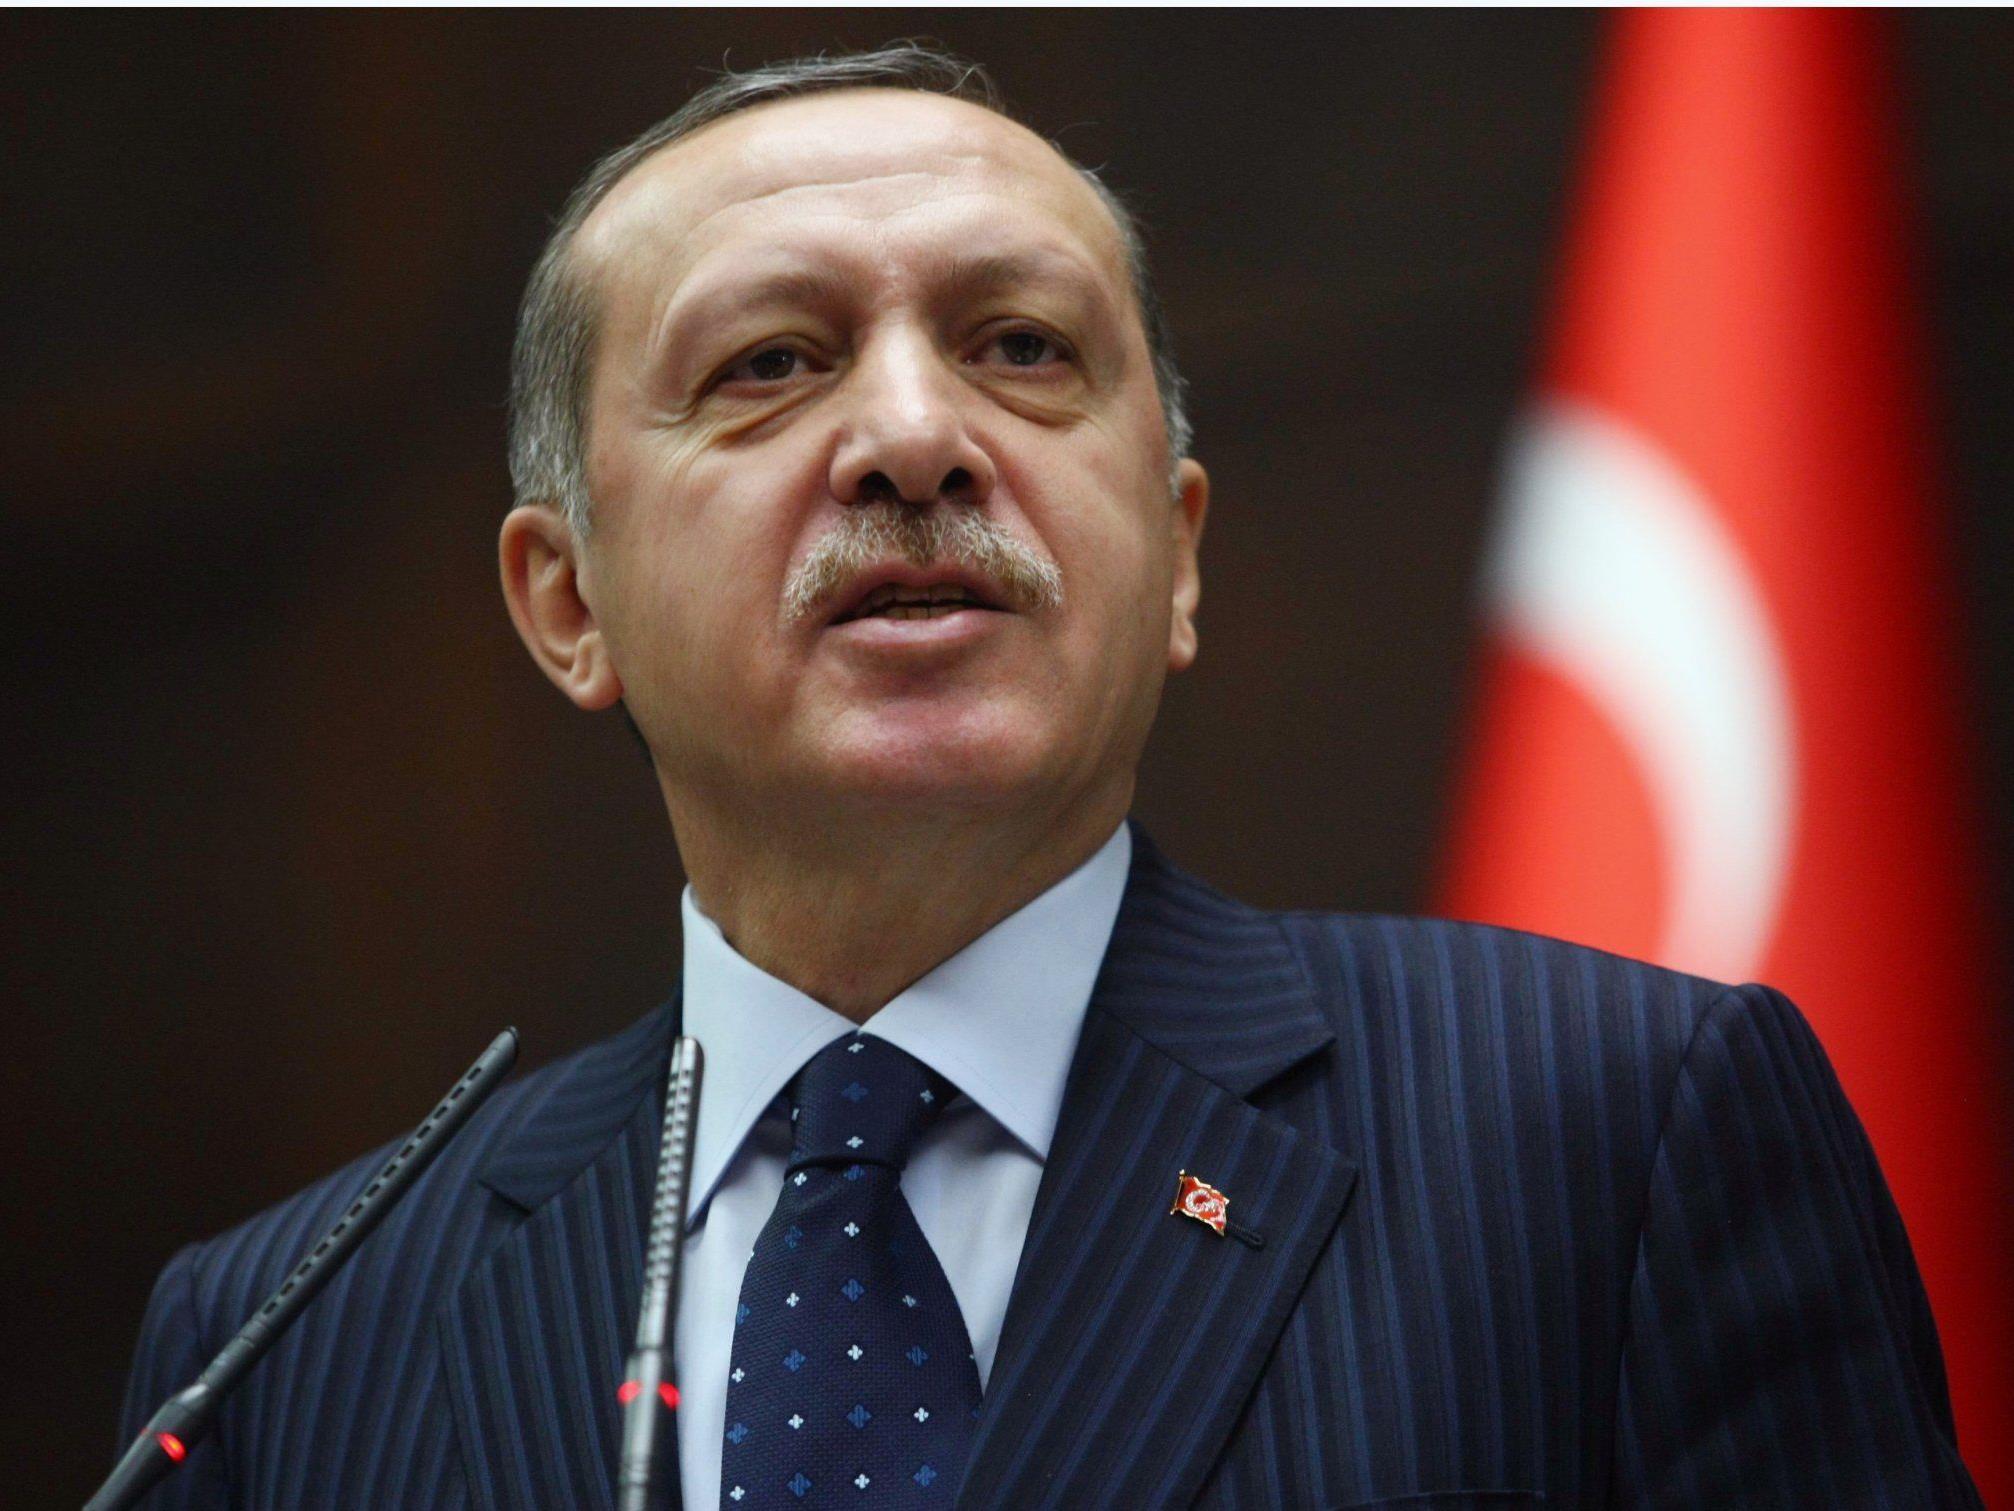 In den Medien gab es den Verdacht, Erdogan habe womöglich Krebs.